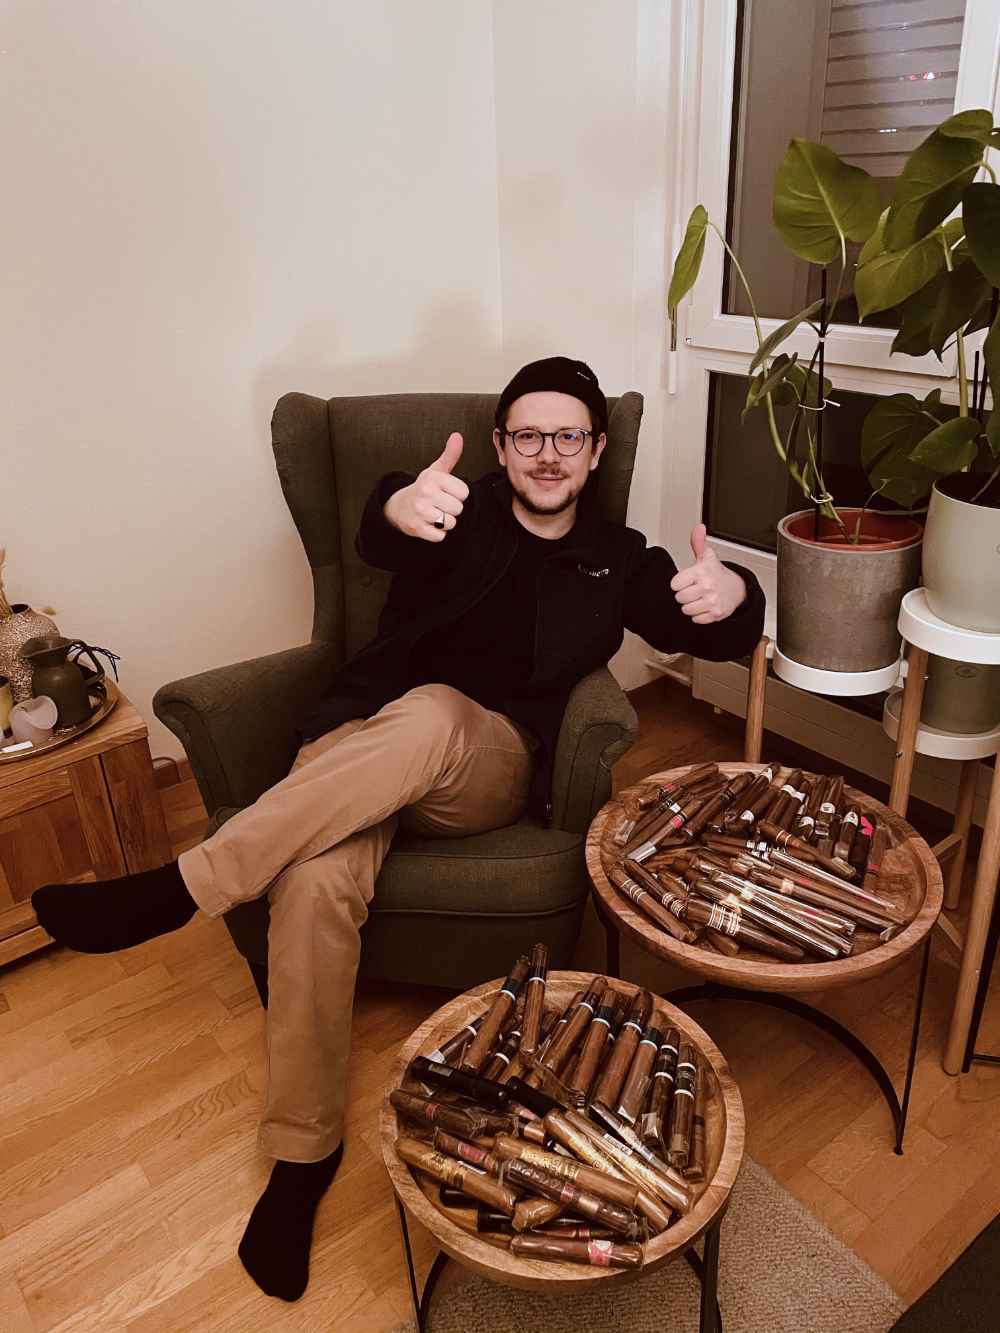 Tomislav Panic a gagné 100 cigares